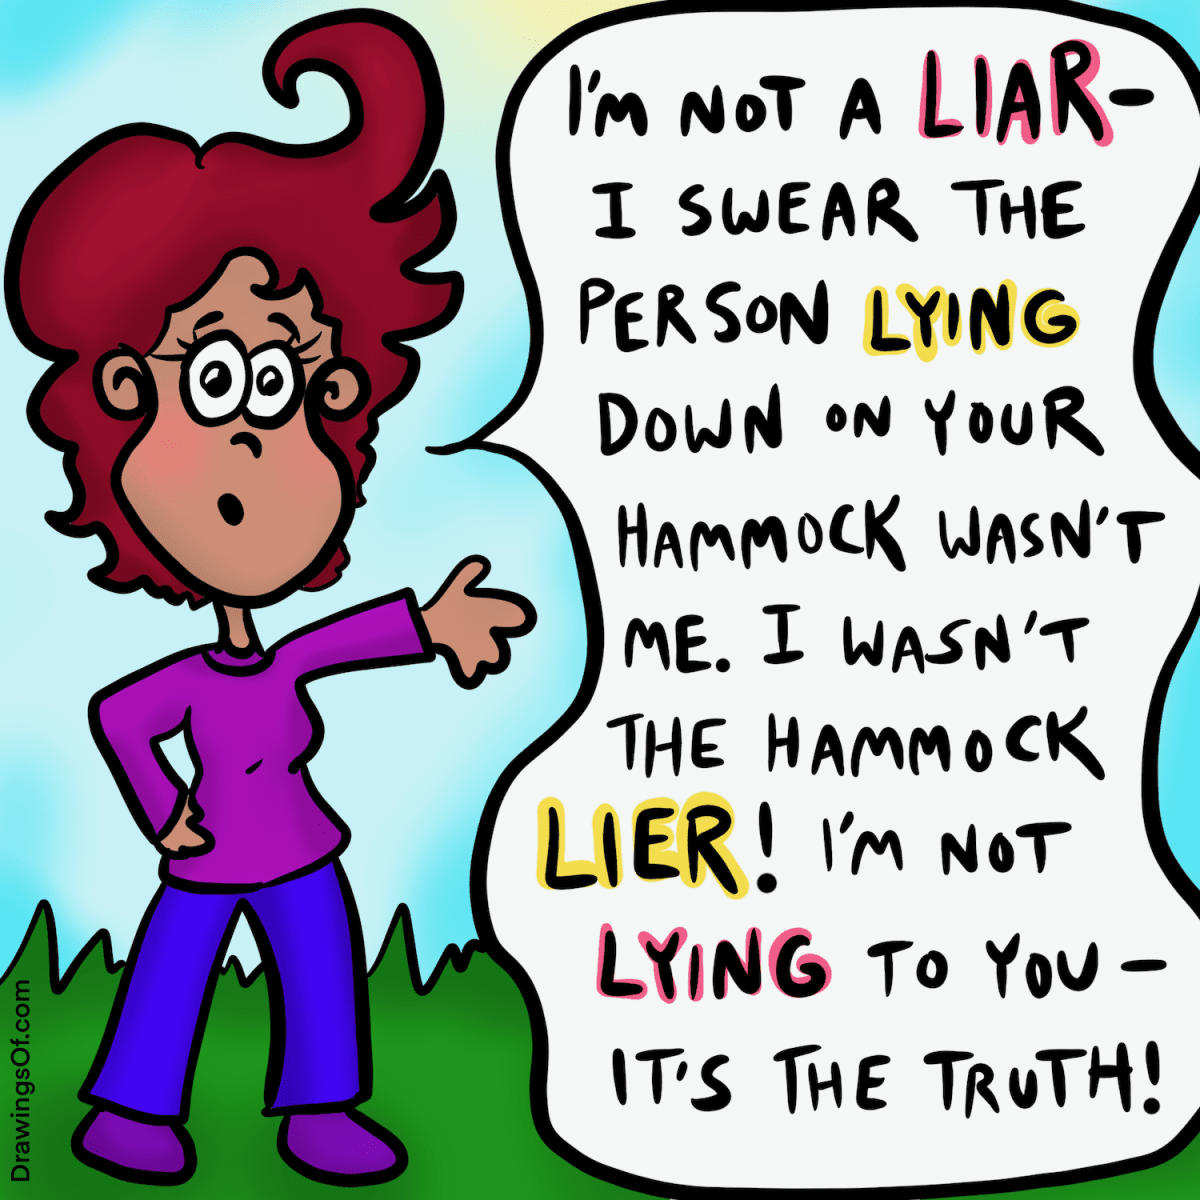 Using liar vs. lier in a sentence.